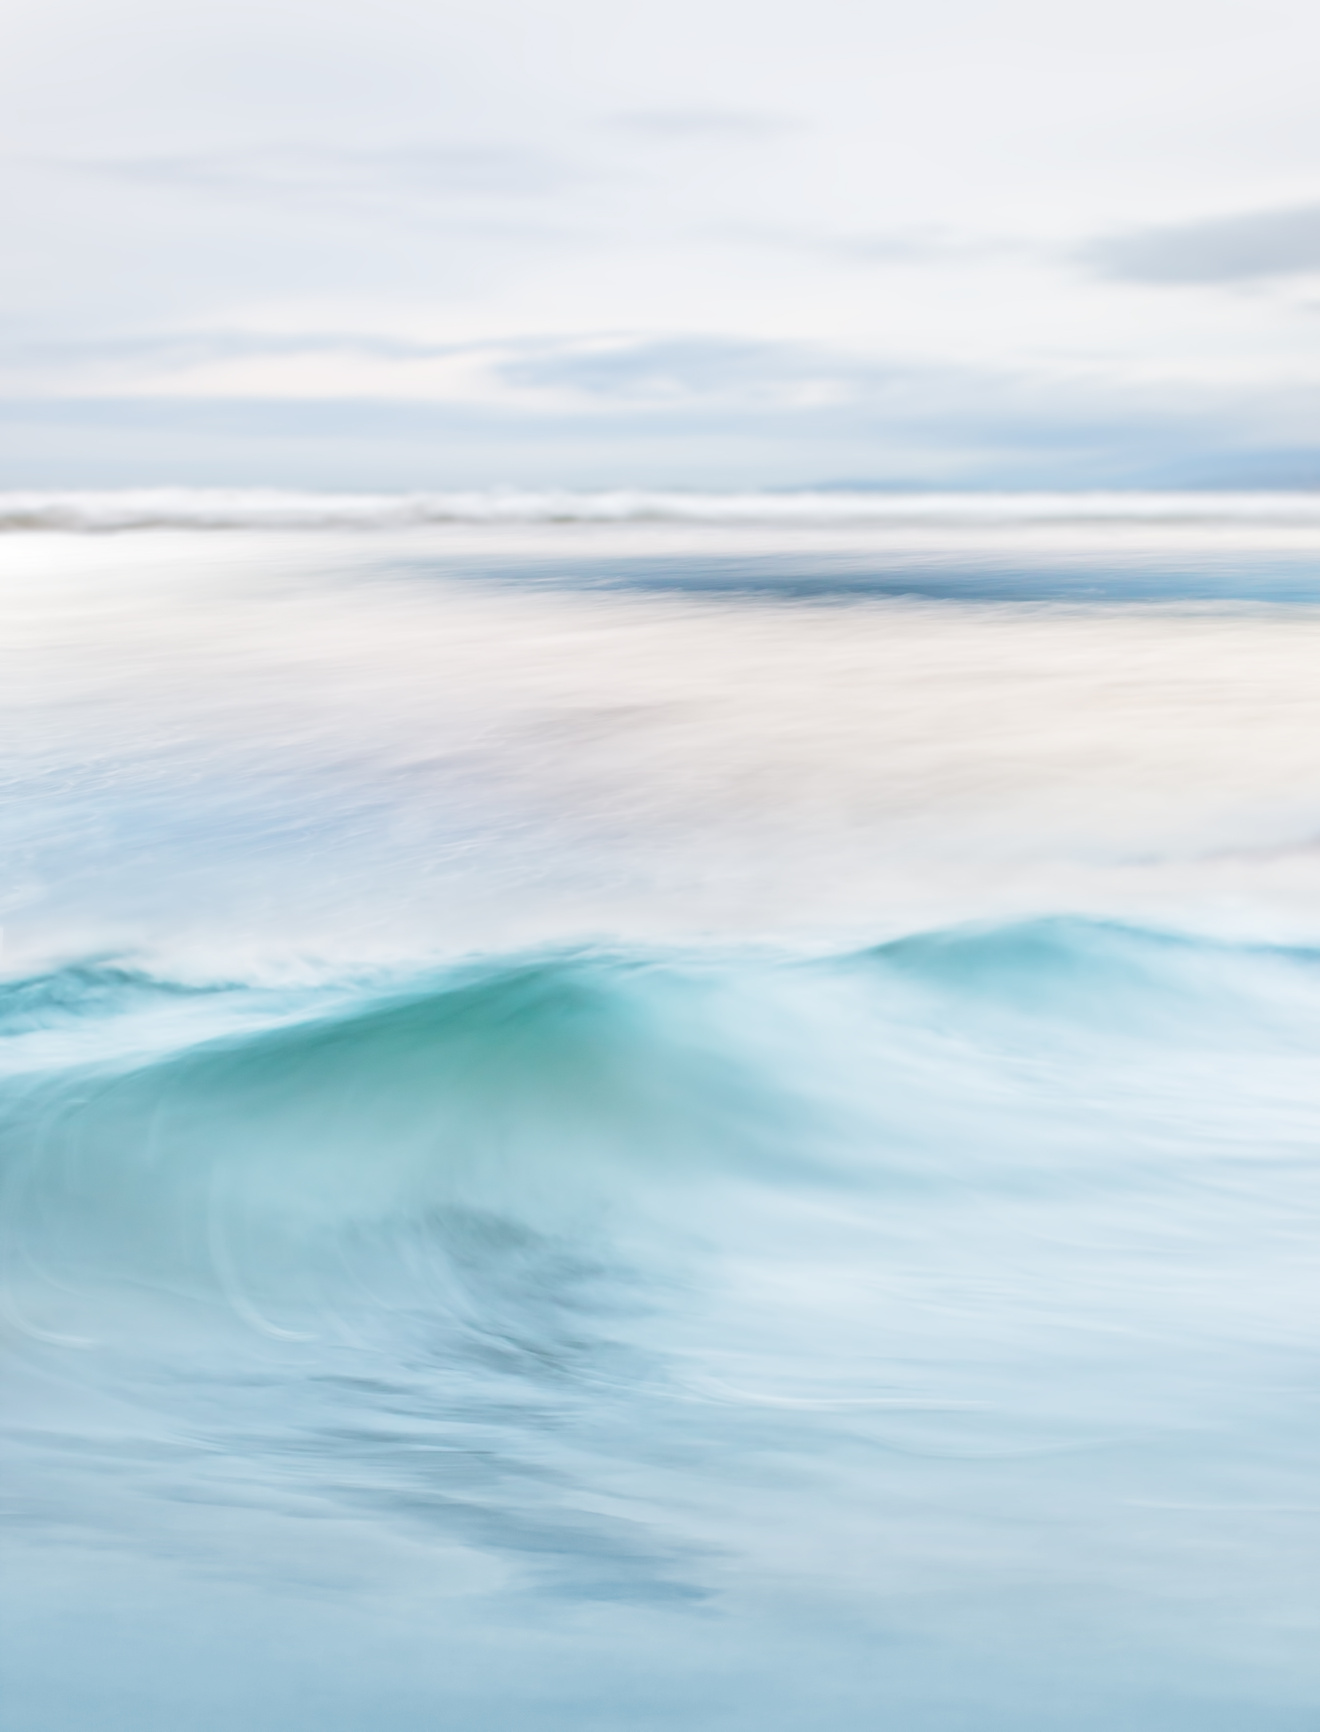 Flowing Ocean Wave